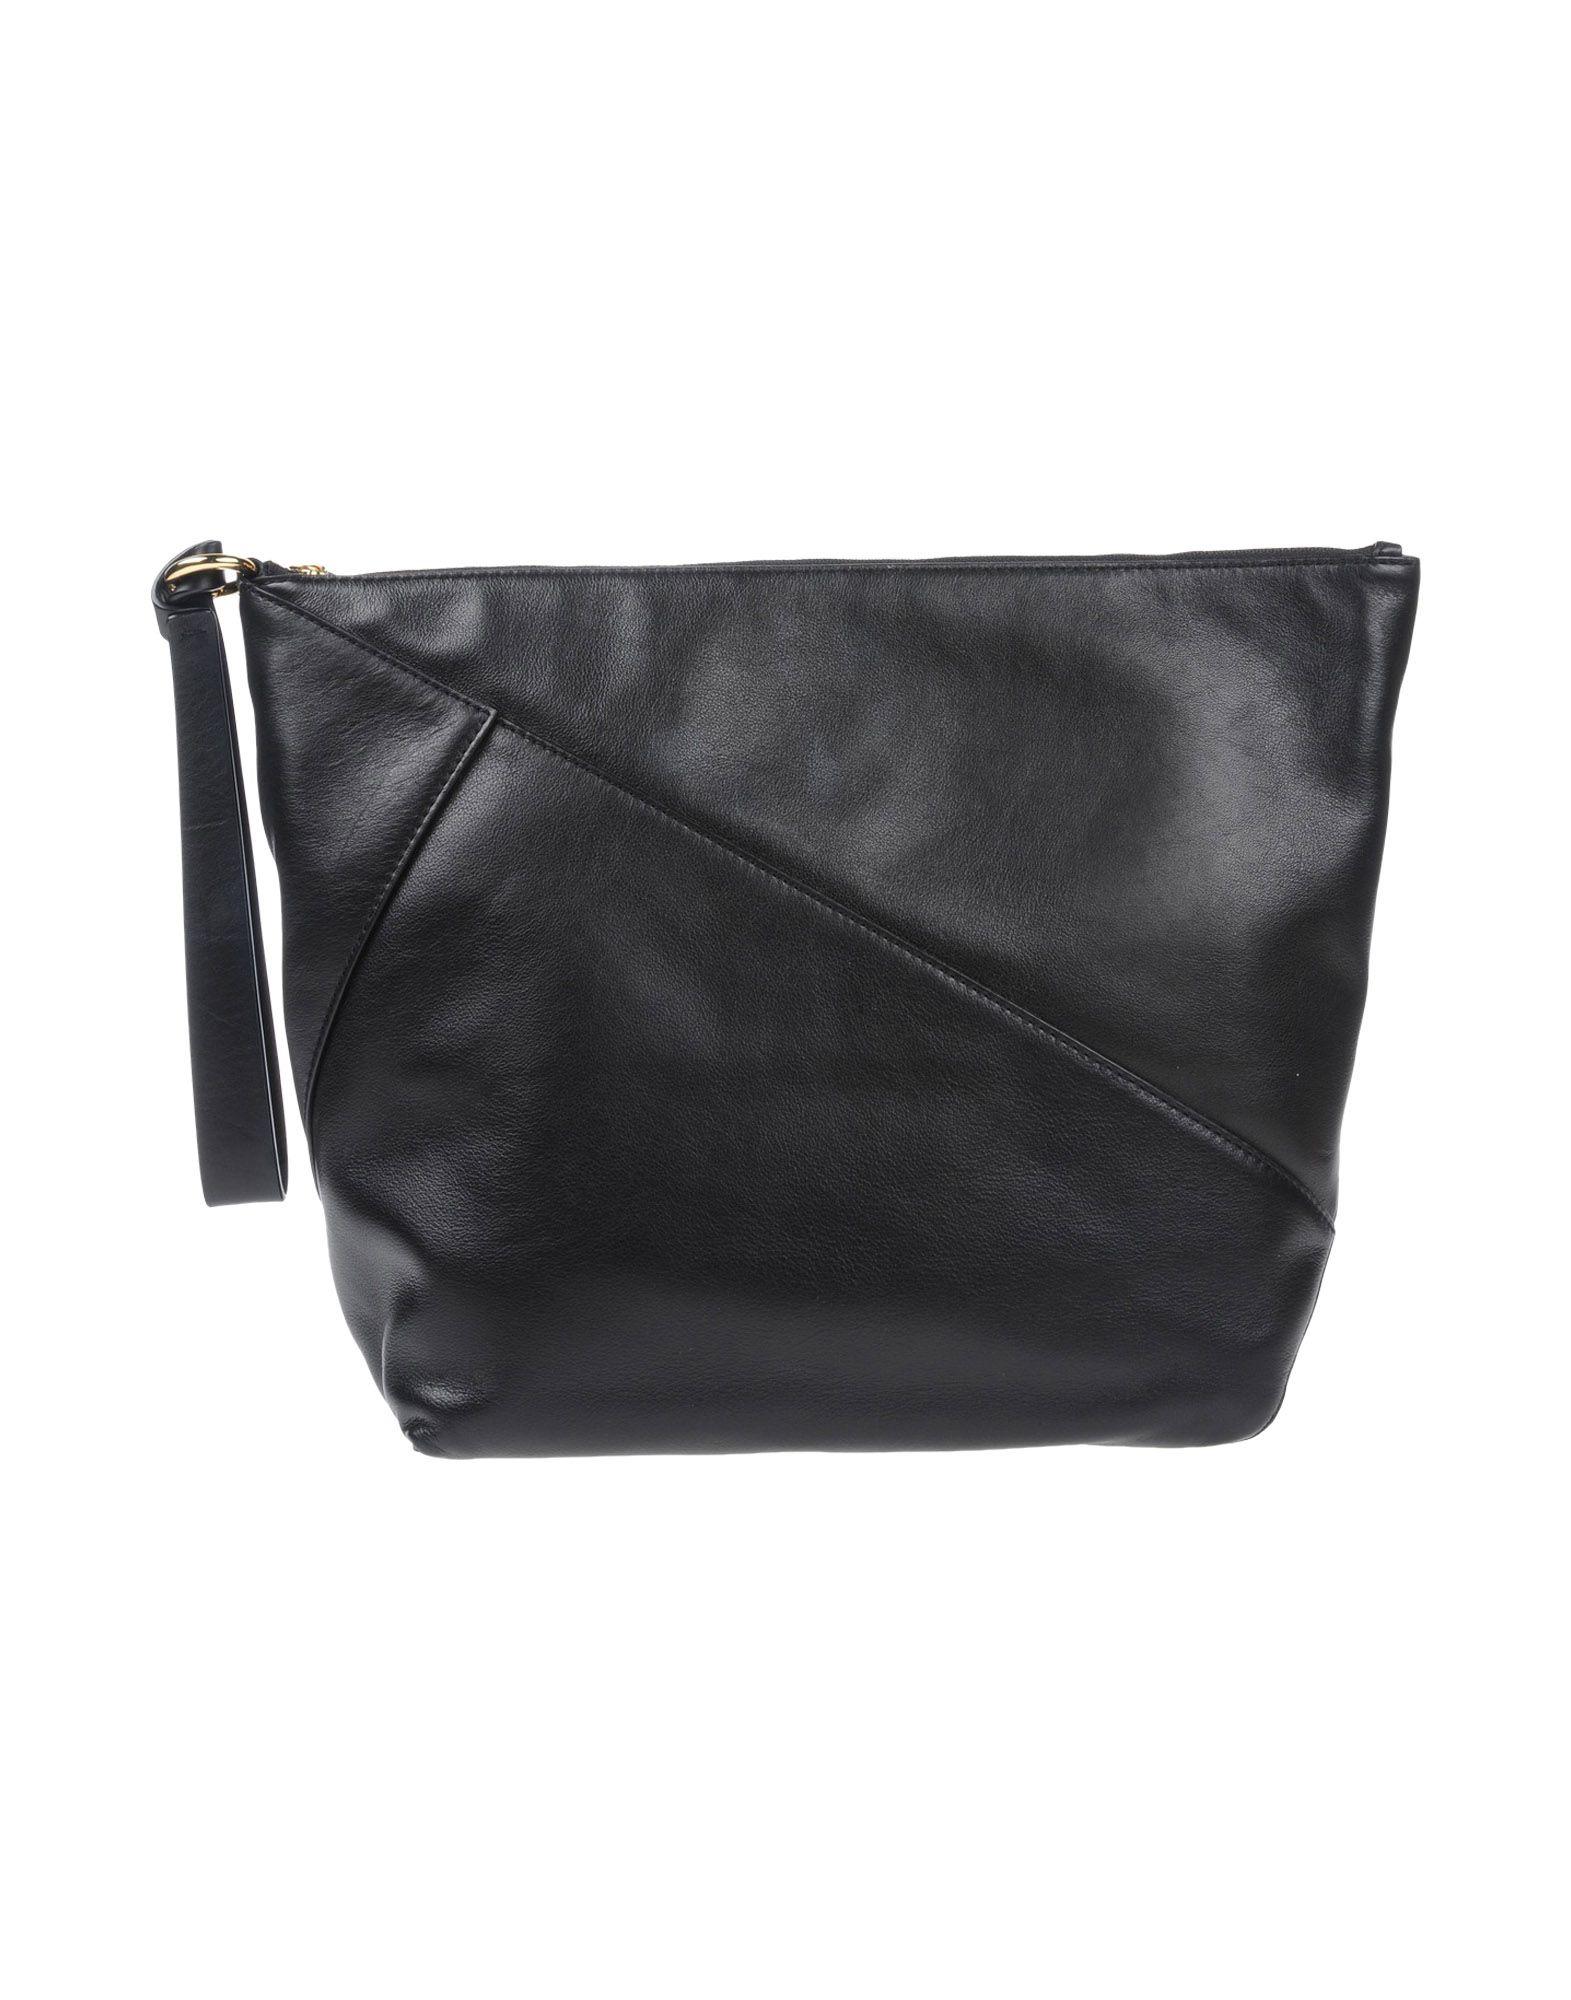 Diane Von Furstenberg Handbag In Black | ModeSens